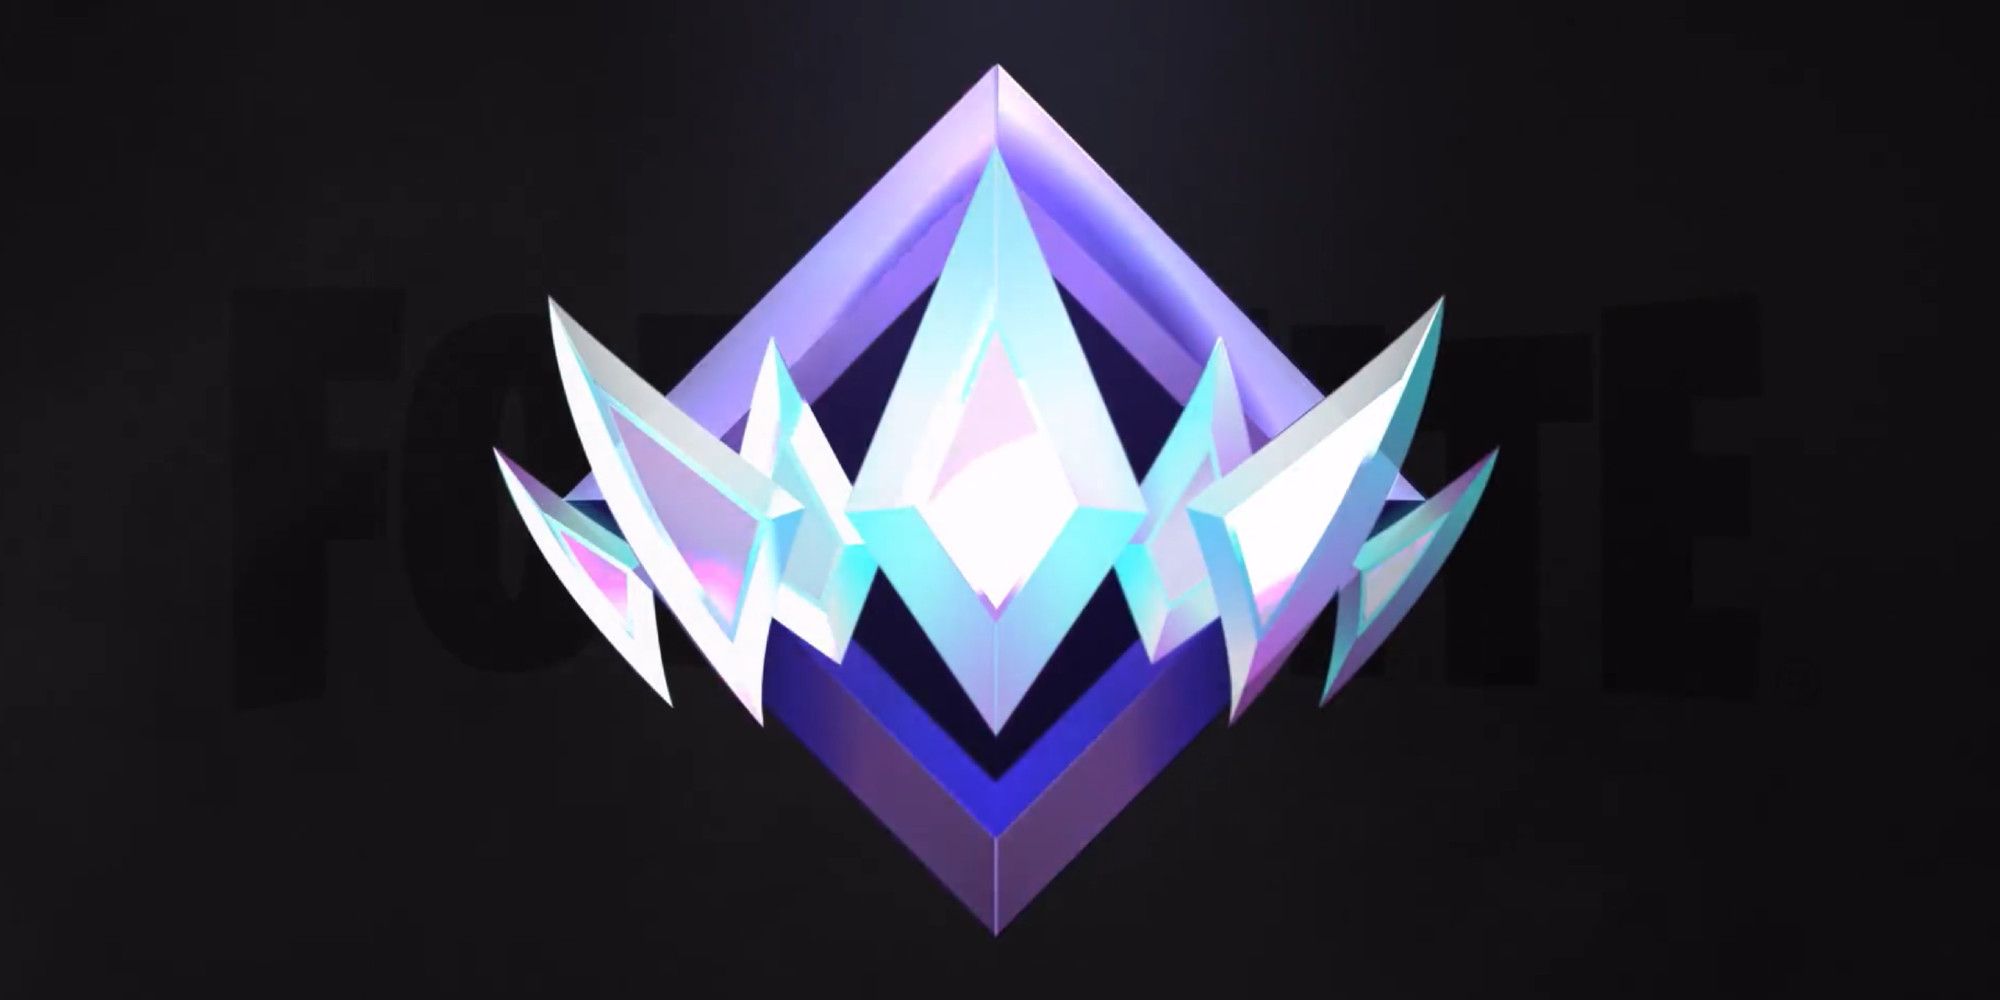 Fortnite Ranked Mode emblem